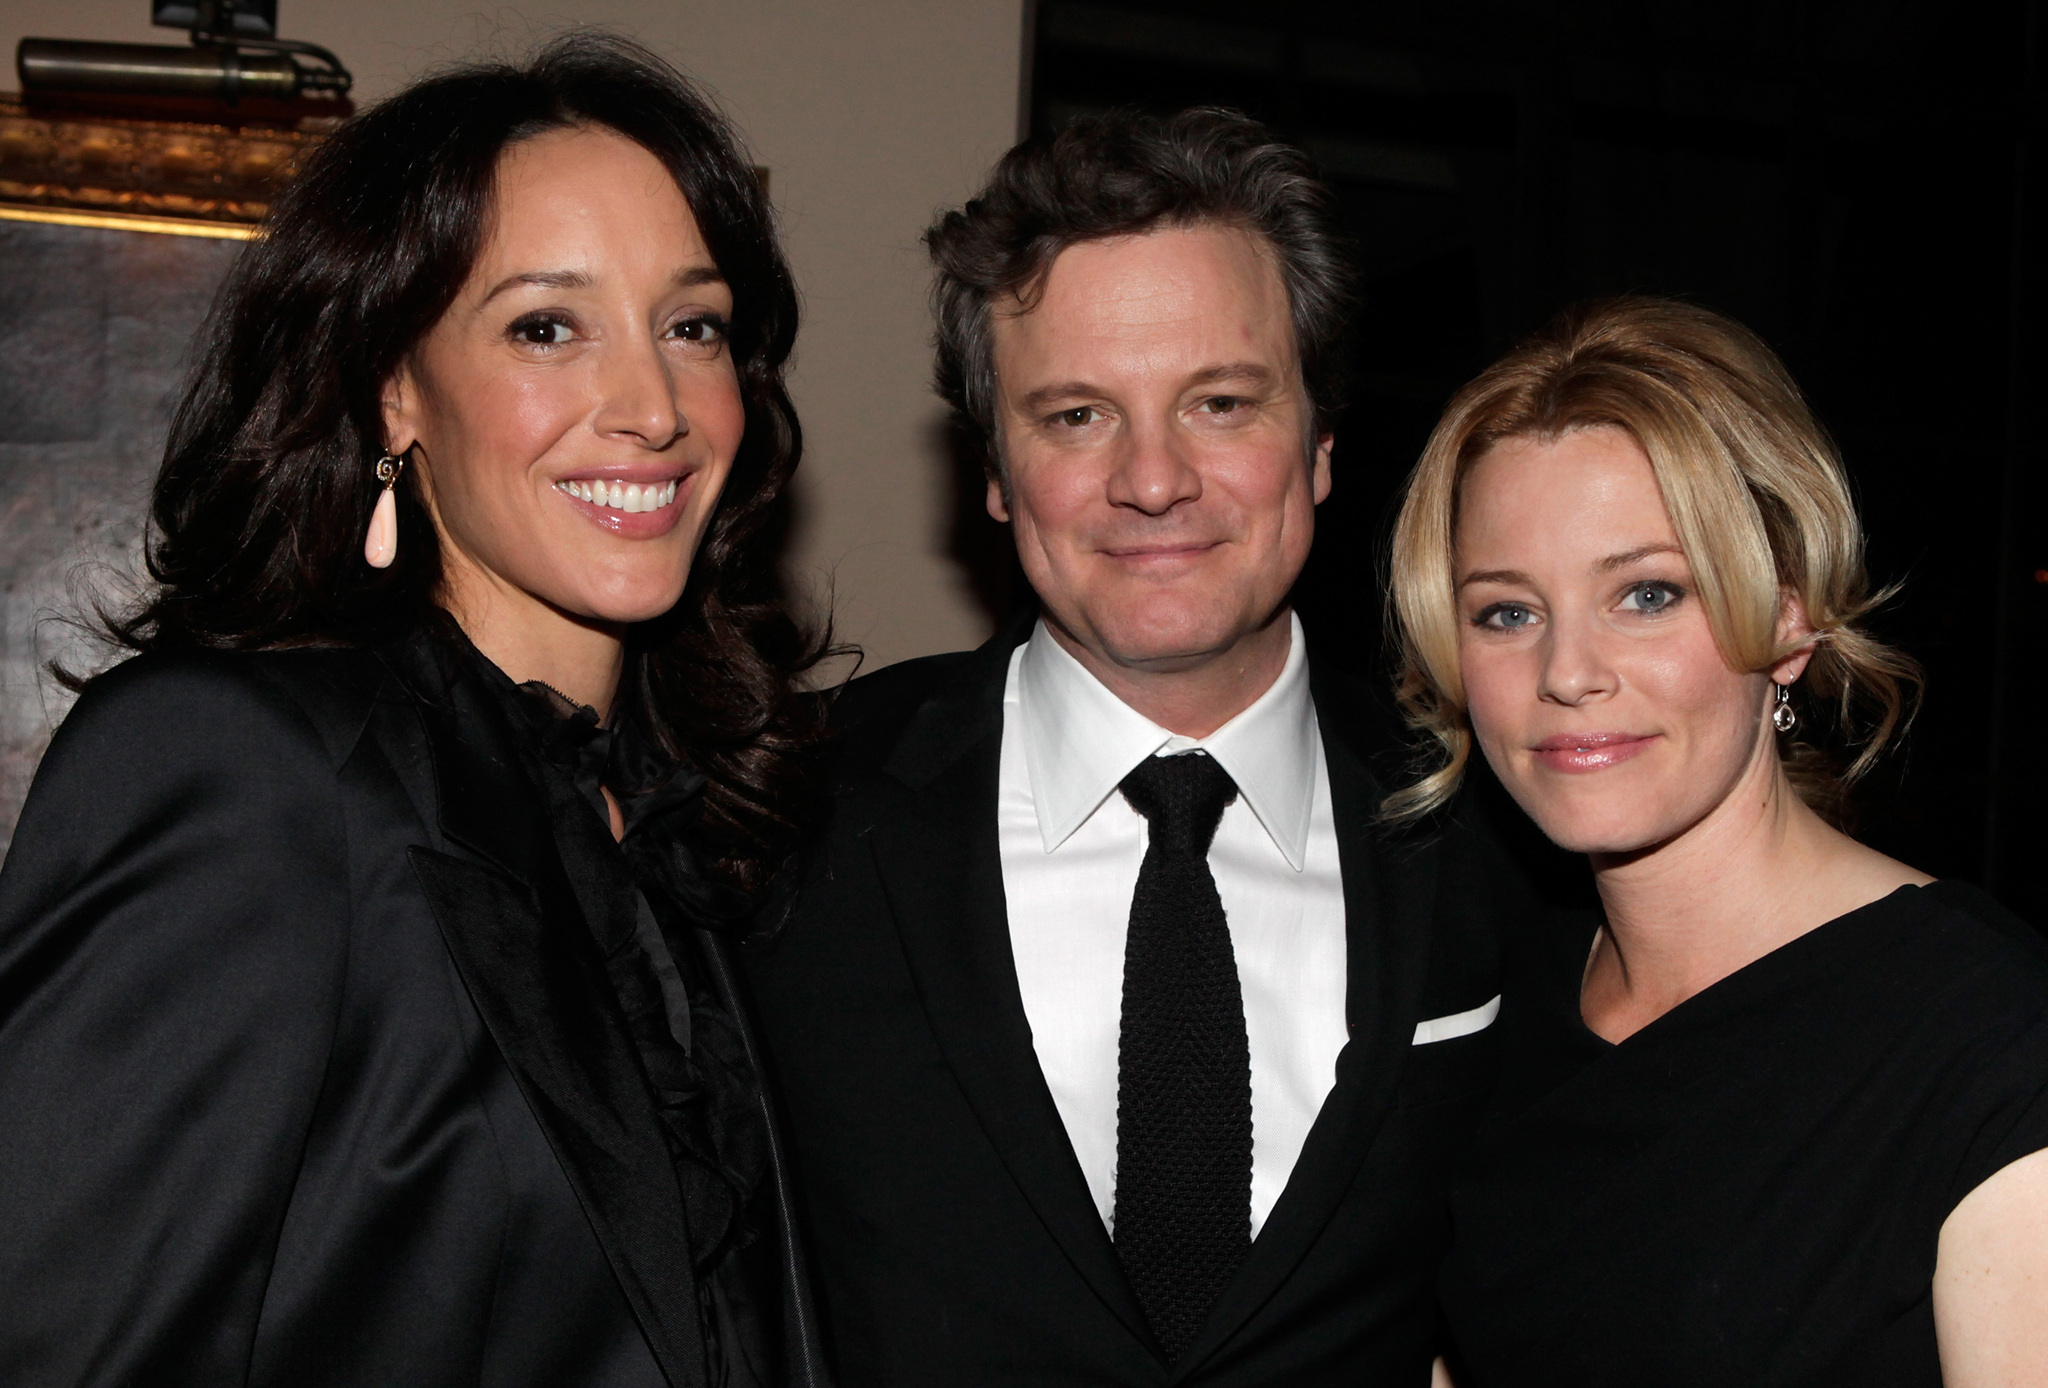 Colin Firth, Jennifer Beals and Elizabeth Banks